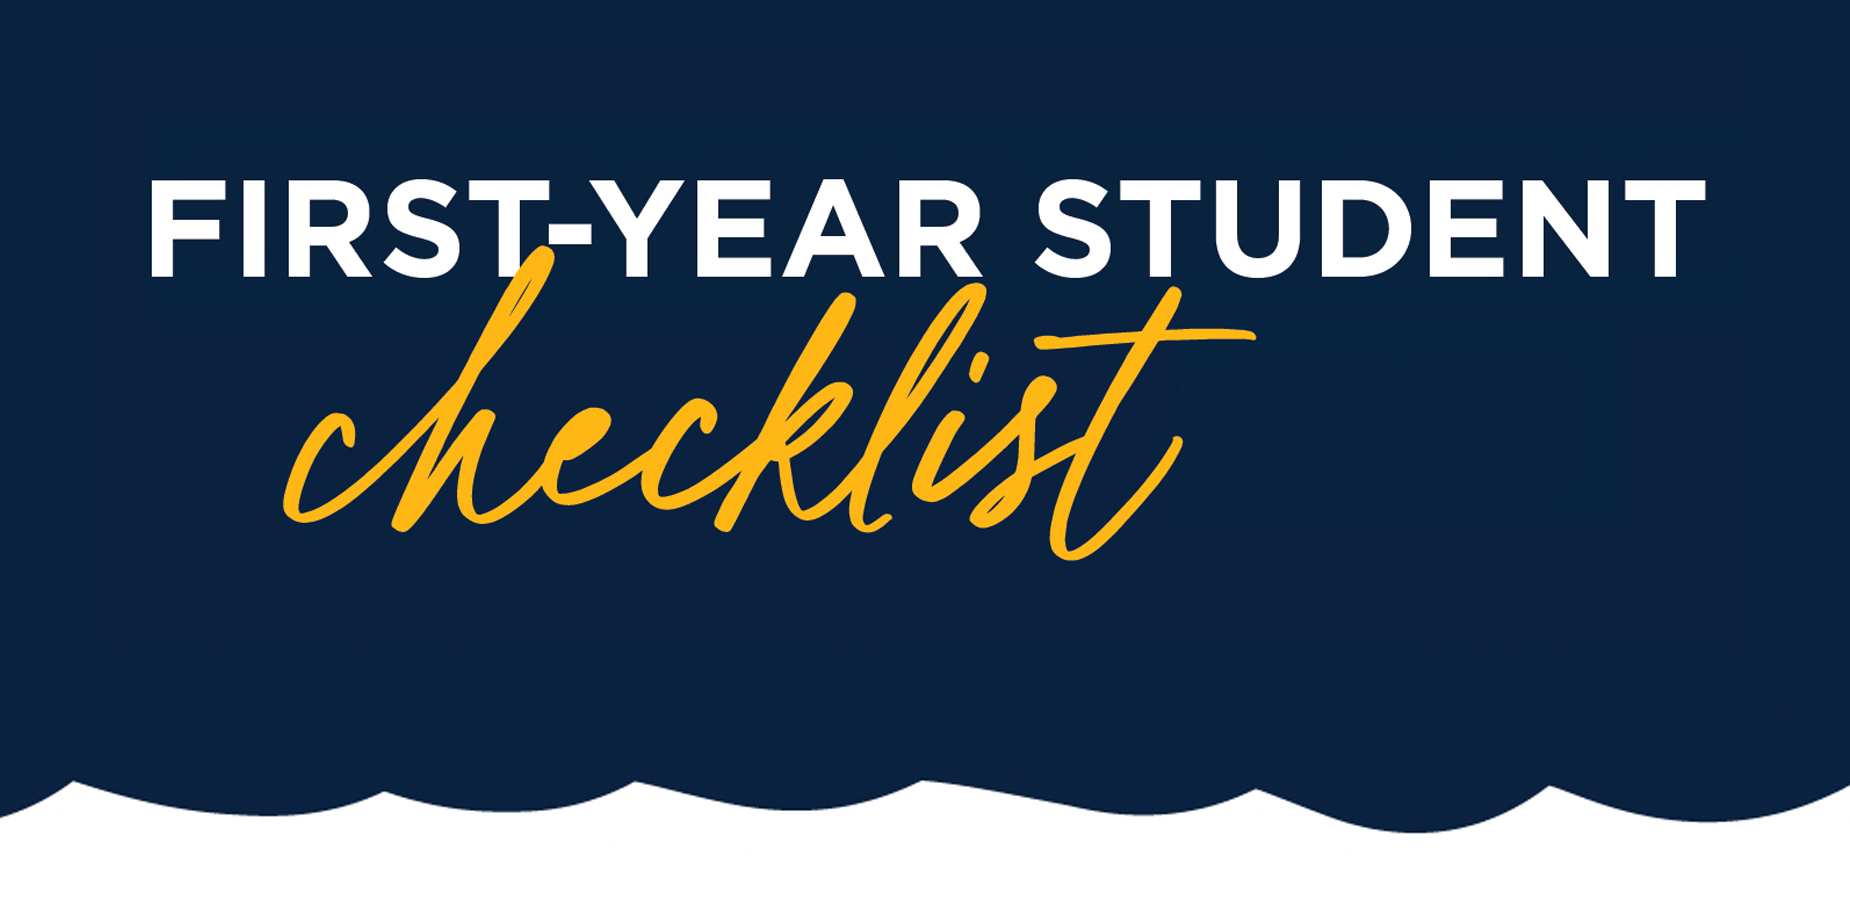 First-Year Student Checklist